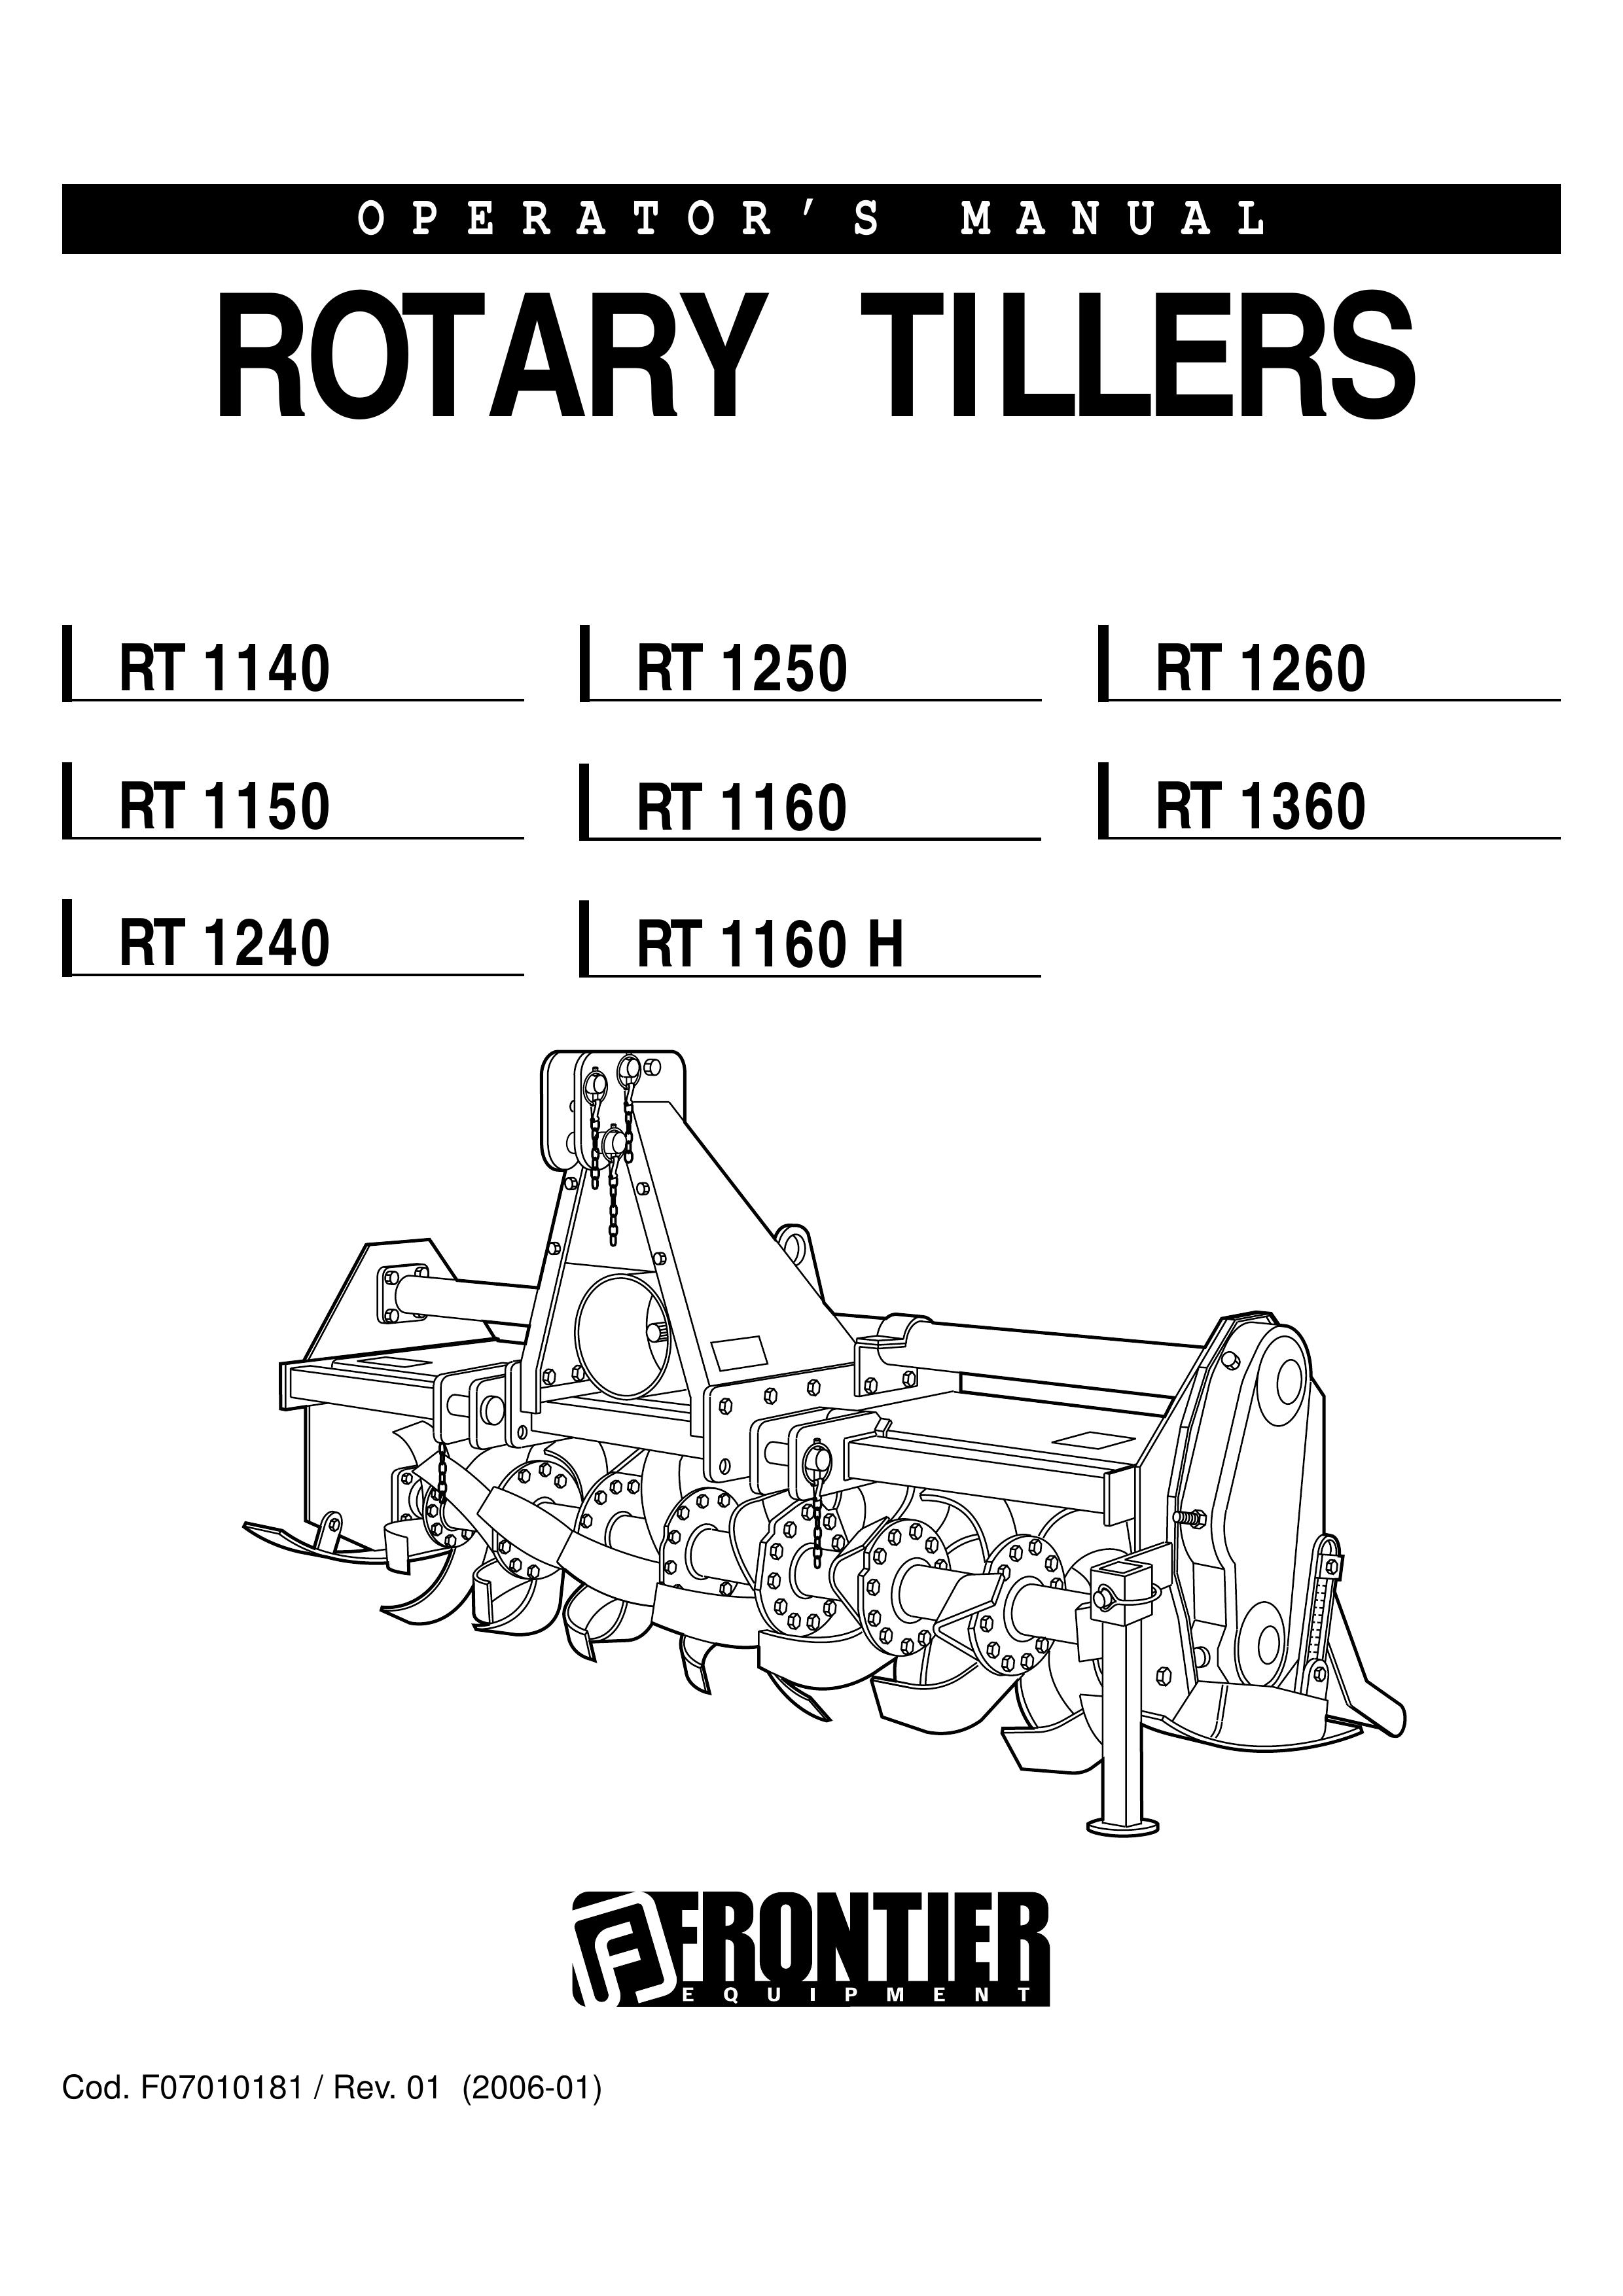 John Deere RT1260 Tiller User Manual